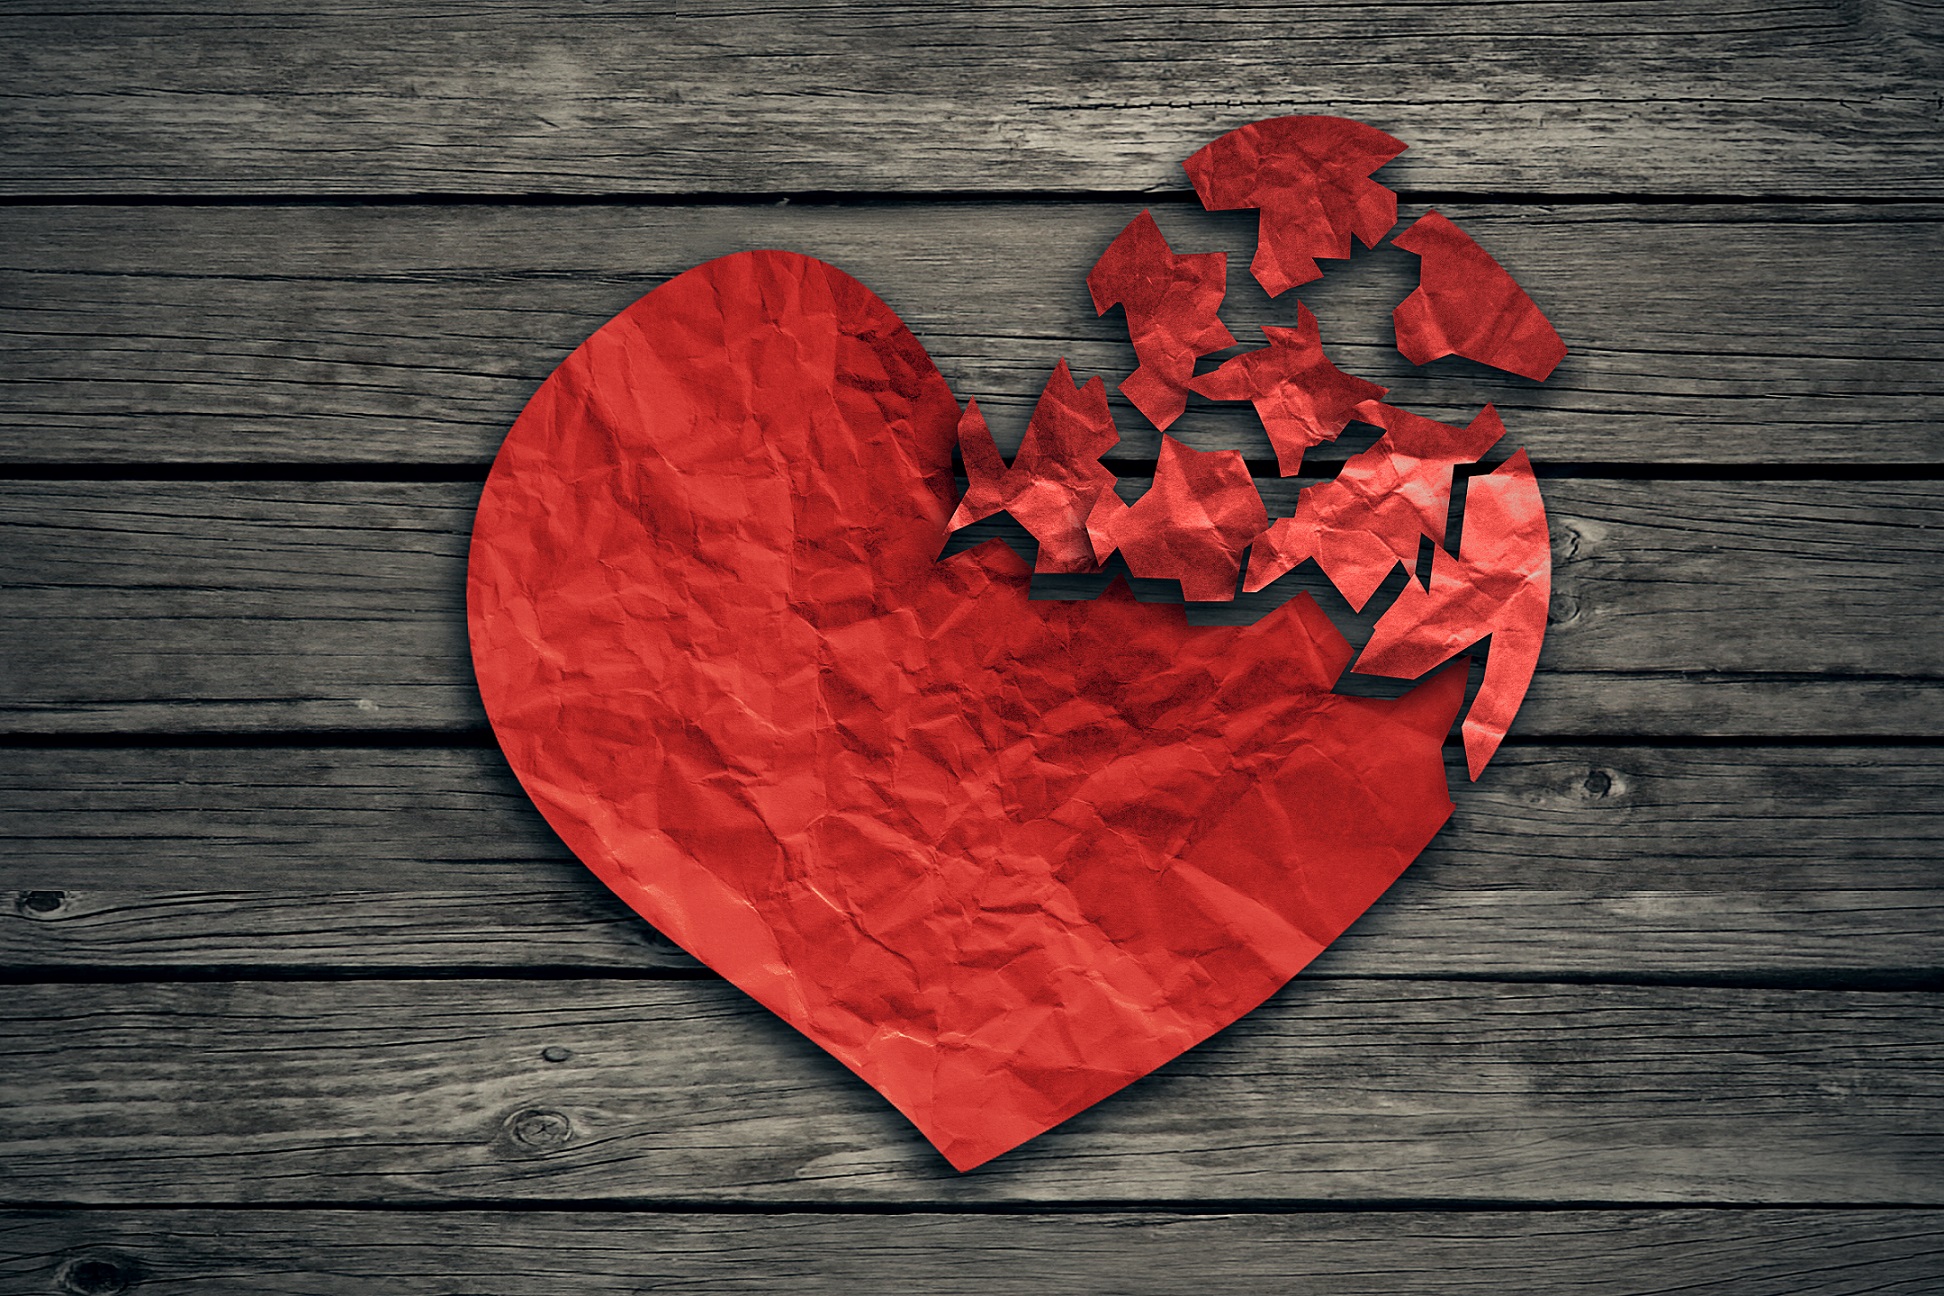 Une émotion heureuse trop forte peut aussi malmener le cœur... © pathdoc, Shutterstock